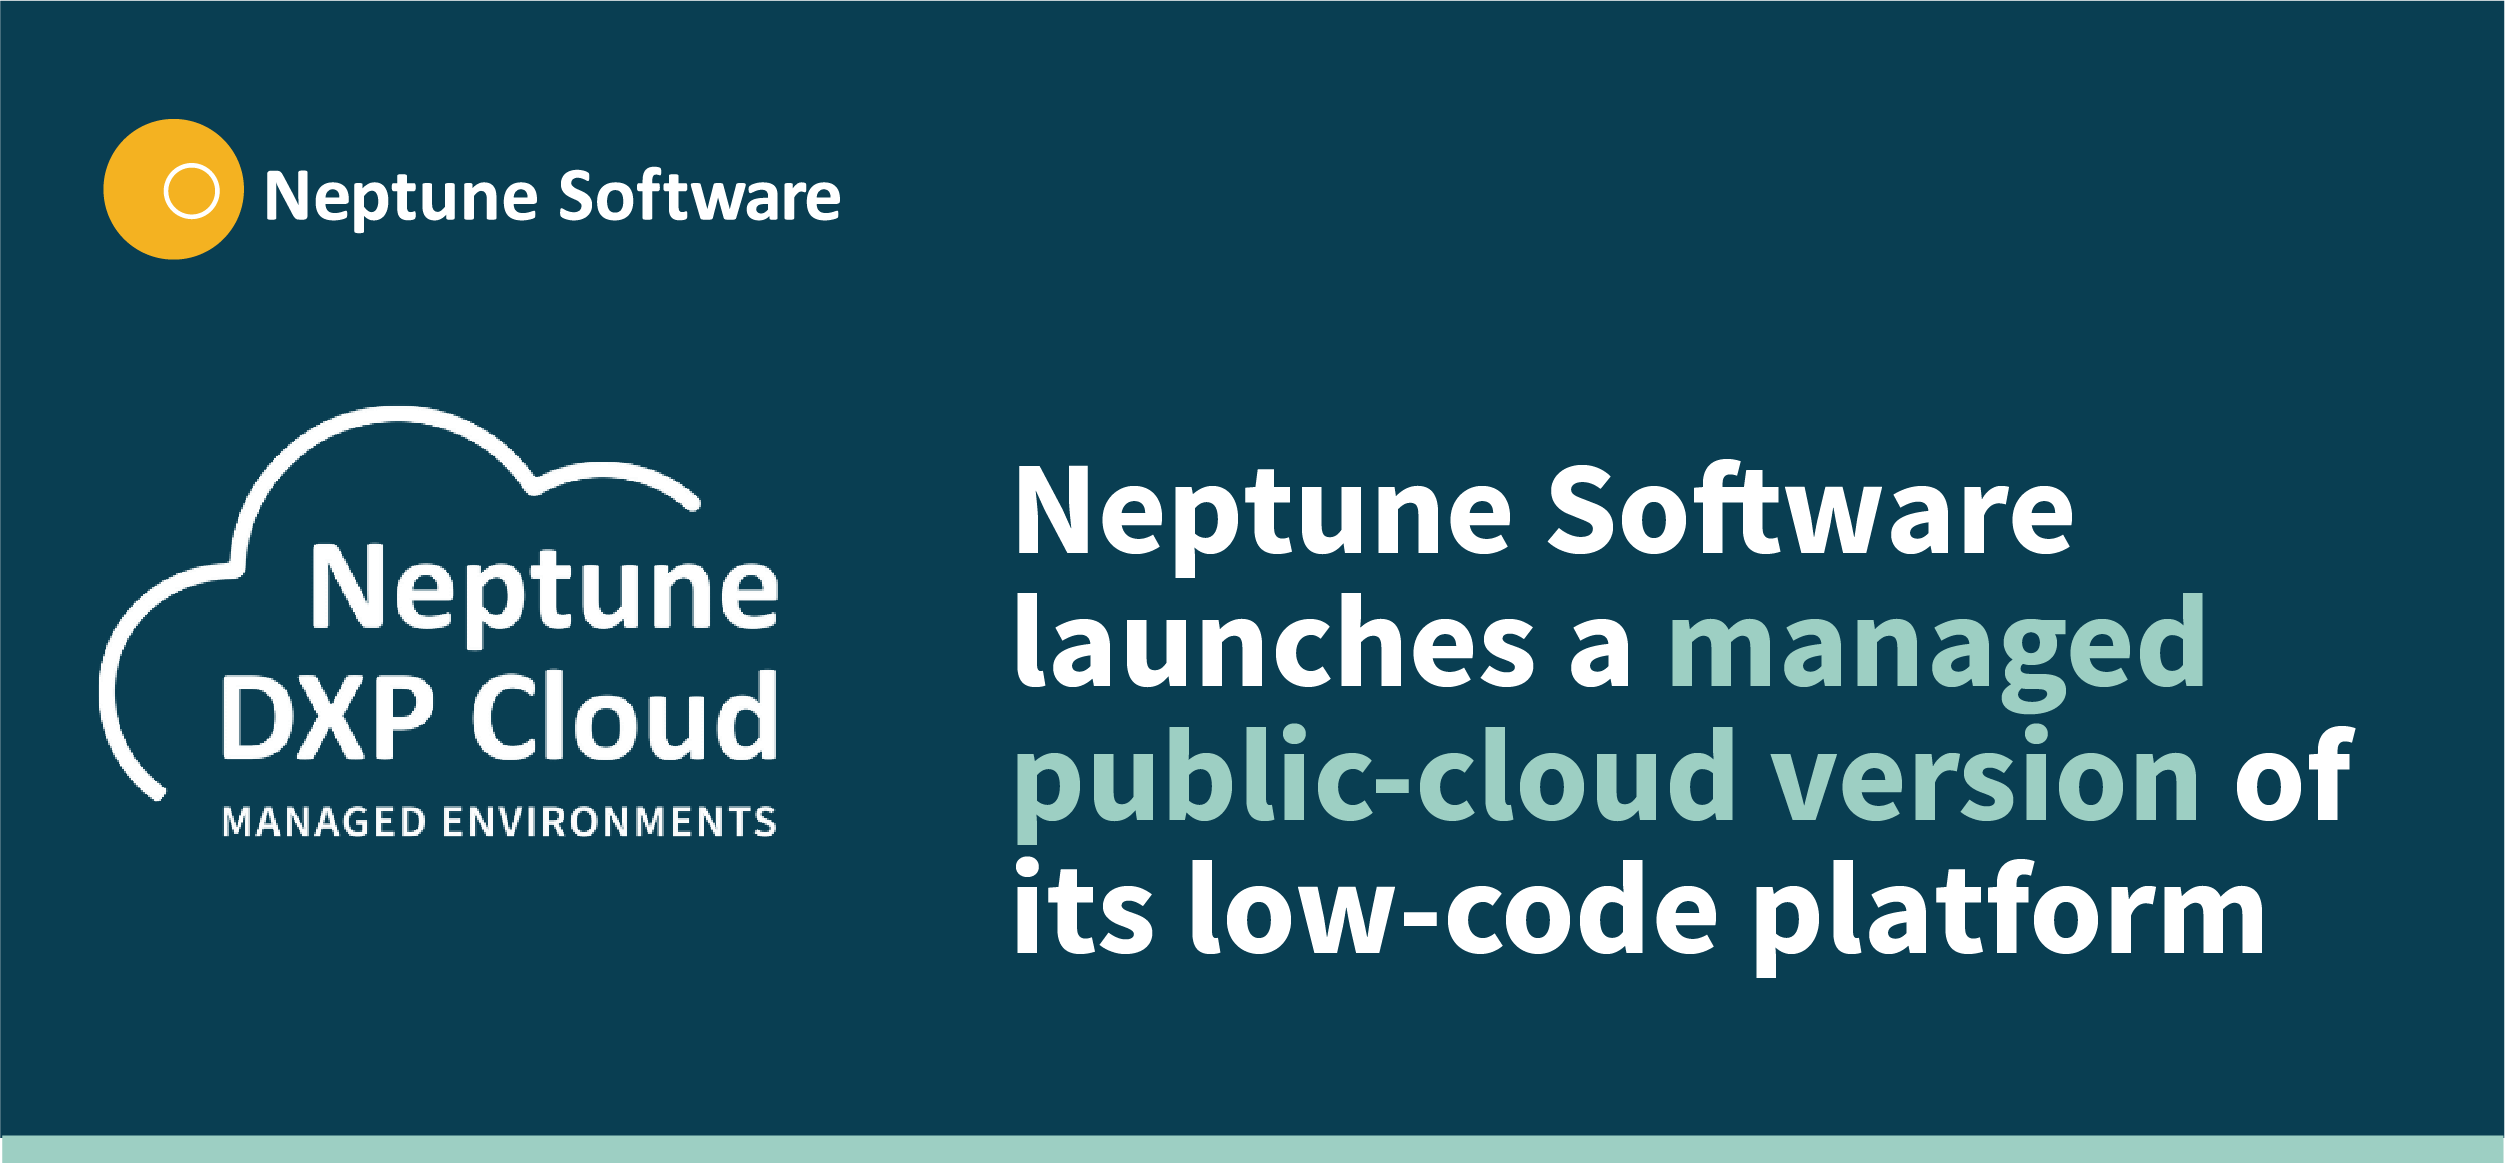 Neptune DXP Cloud 